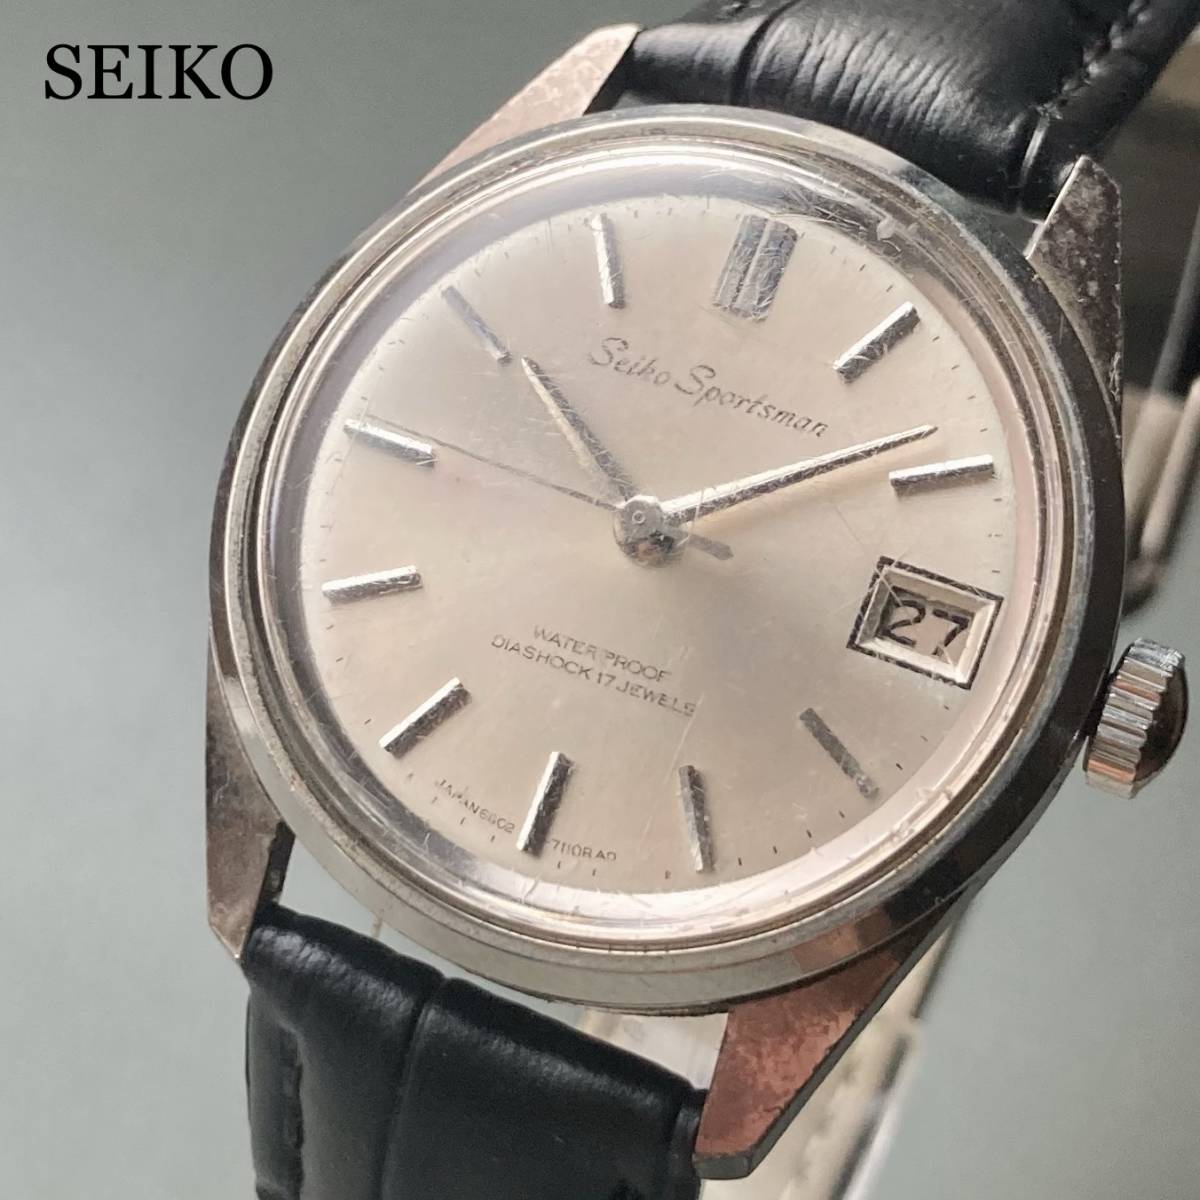 高価値 ケース径34㎜ Sportsman SEIKO 男性 手巻き 1967年 腕時計